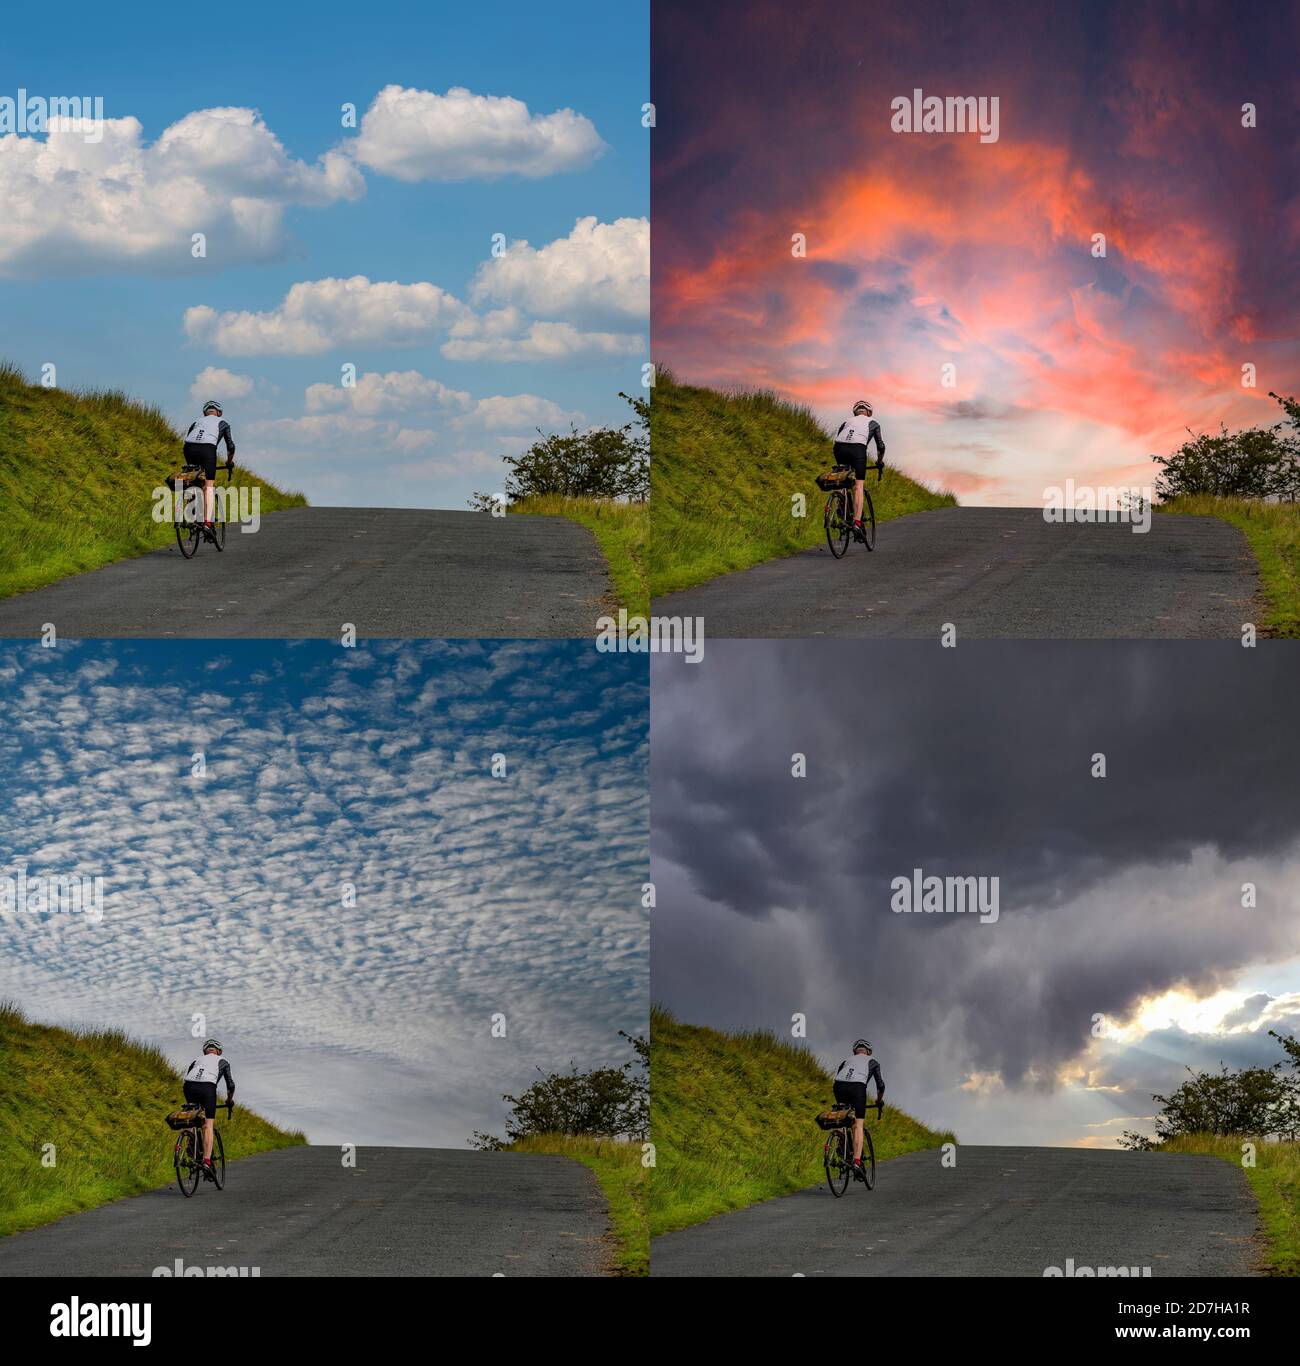 Adobe Photoshop Sky Ersatz auf Bild von Radfahrer auf einem Hügel fahren. Stockfoto